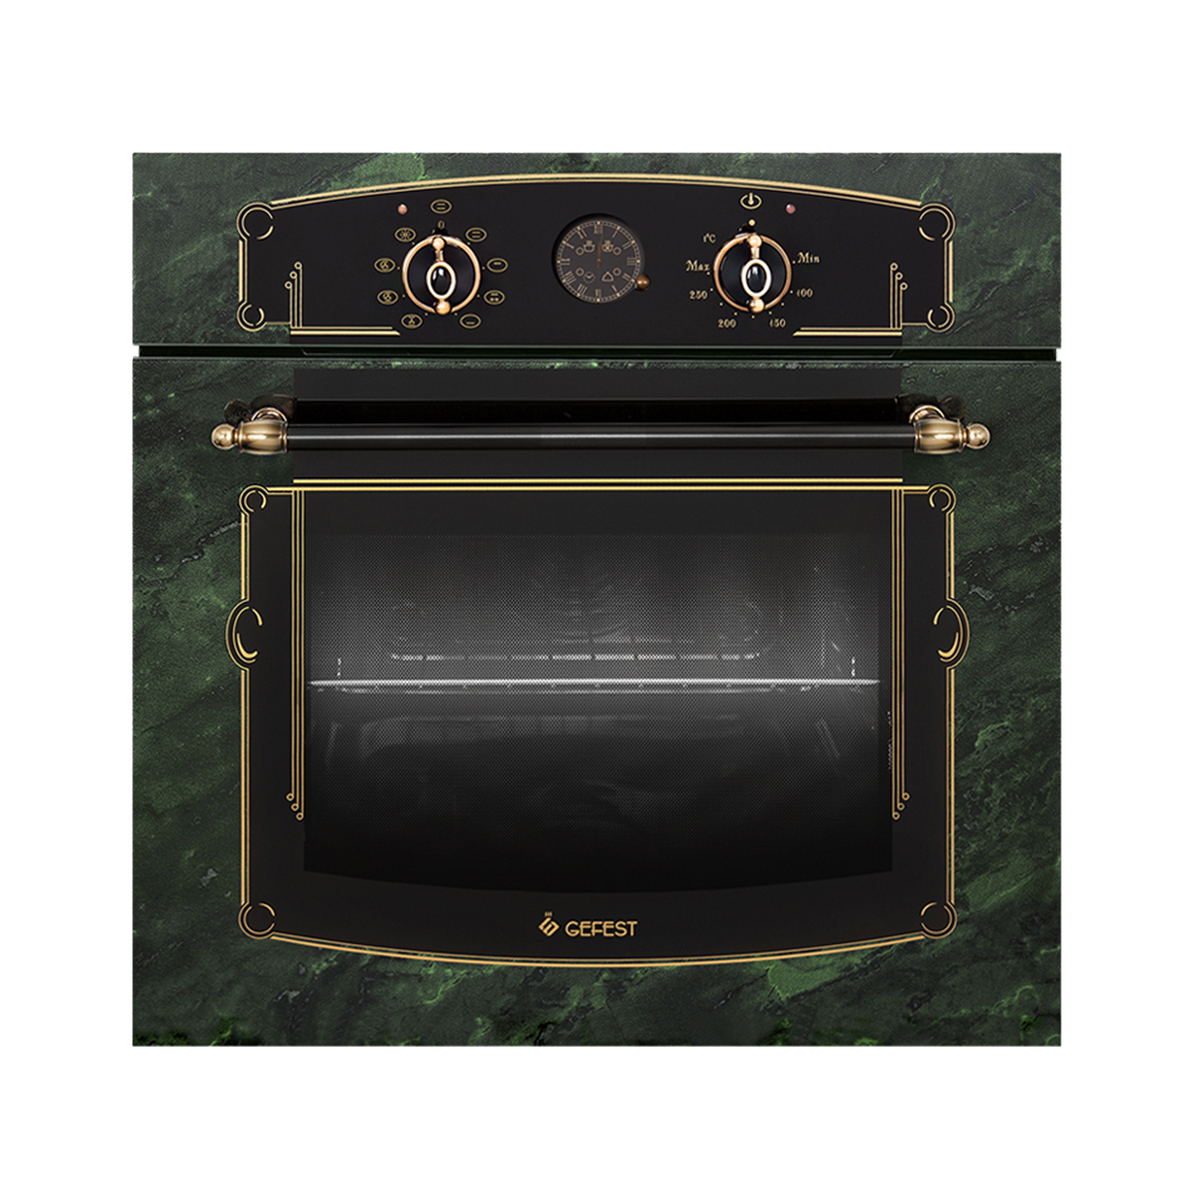 Встраиваемый электрический духовой шкаф GEFEST DA 622-03 K69S зеленый, золотистый миксер kitchenaid 5ksm156vgepp зеленый золотистый